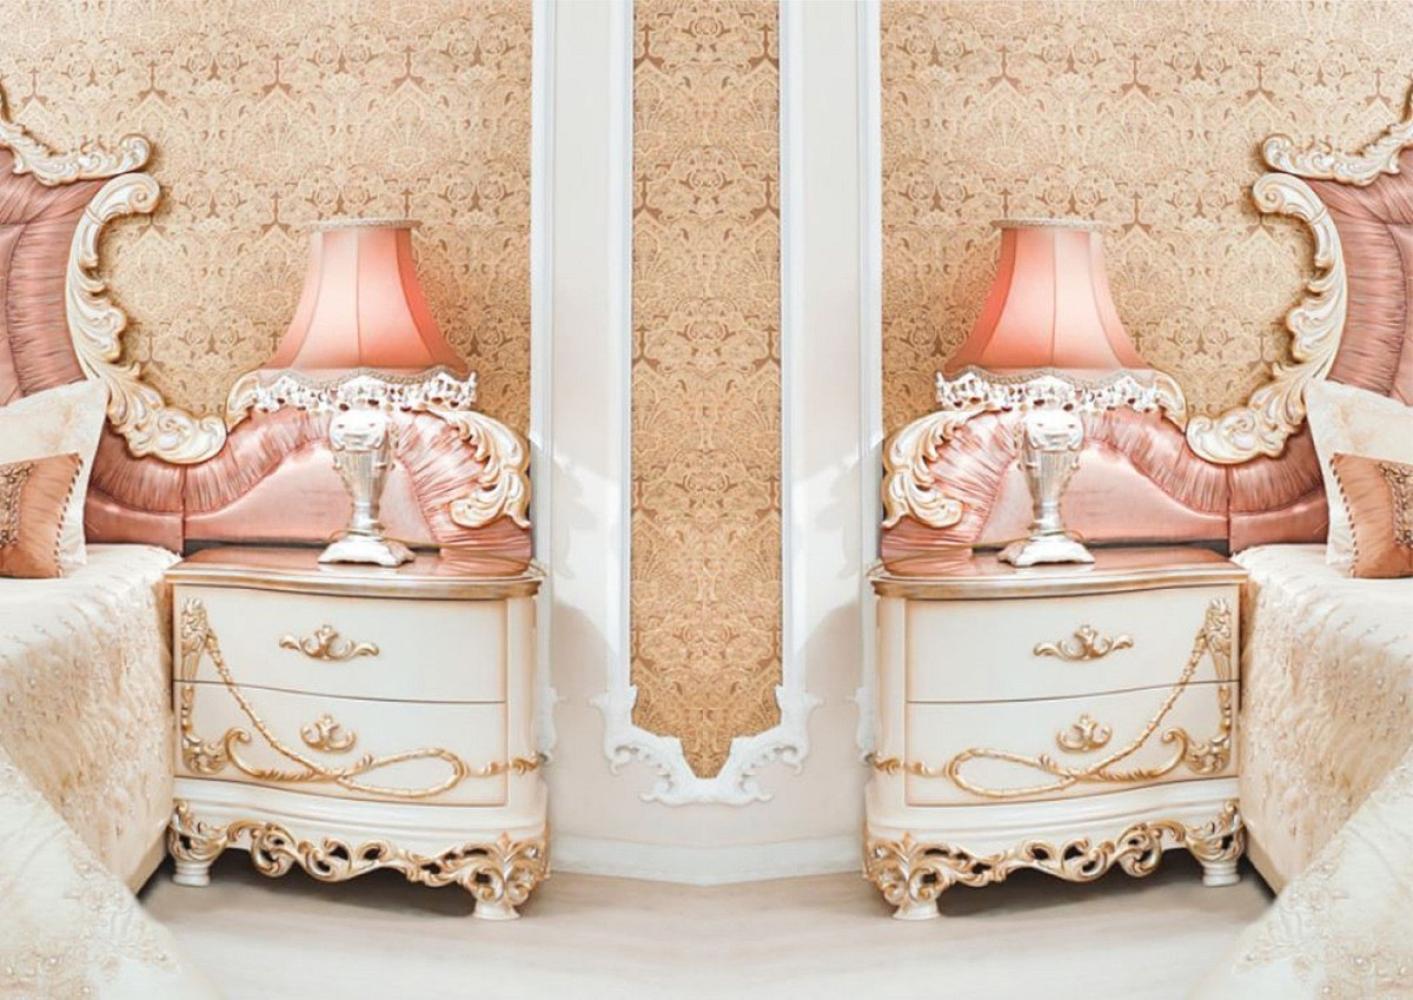 Casa Padrino Luxus Barock Nachtkommoden Set Weiß / Creme / Kupferfarben 70 x 55 x H. 68 cm - Prunkvolle Massivholz Nachttische - Barock Schlafzimmer Möbel Bild 1